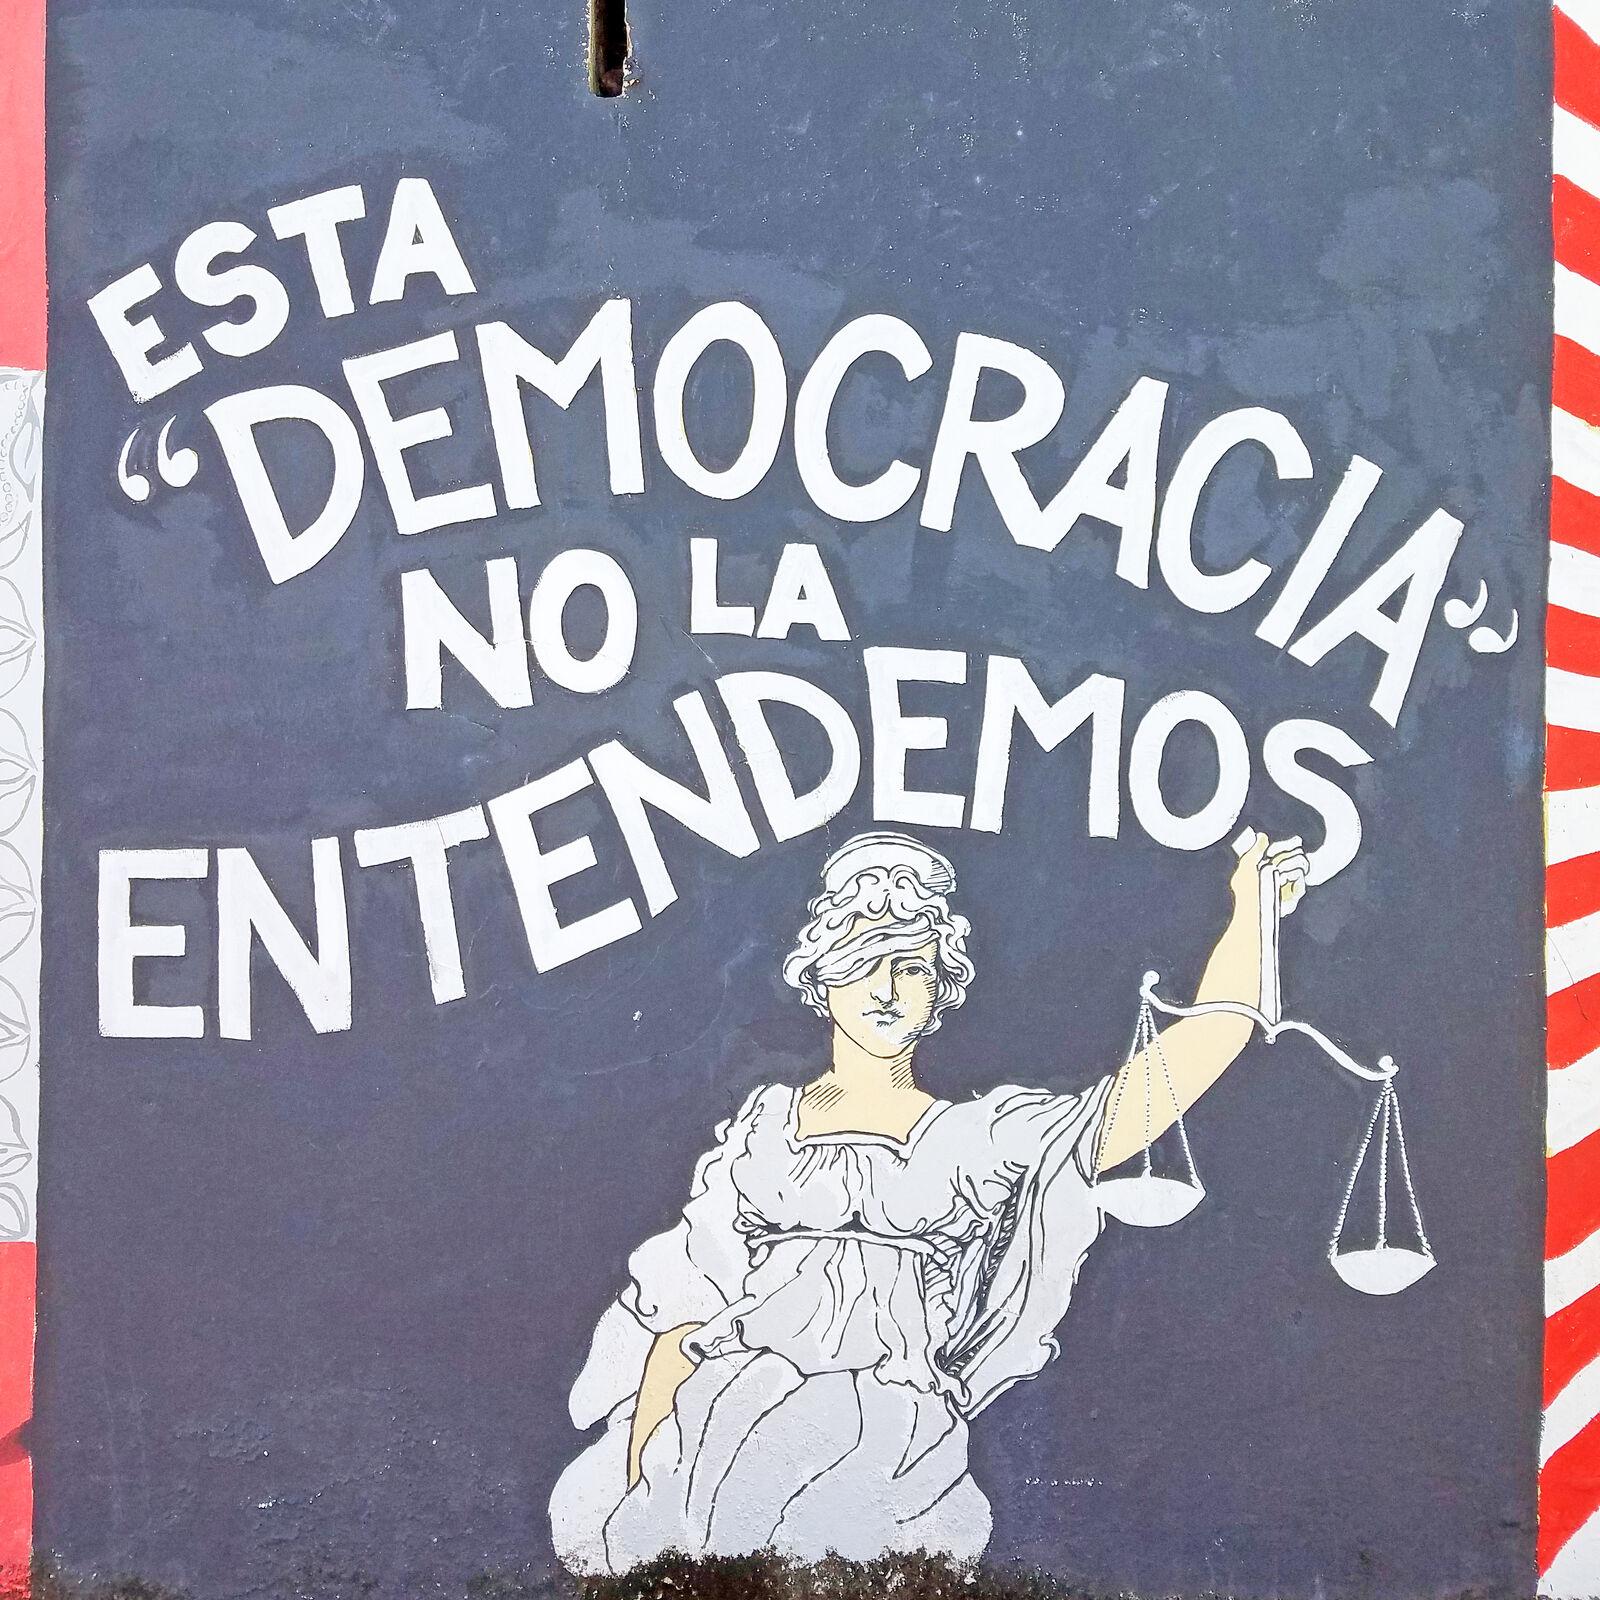 Political Graffiti Puerto Rico